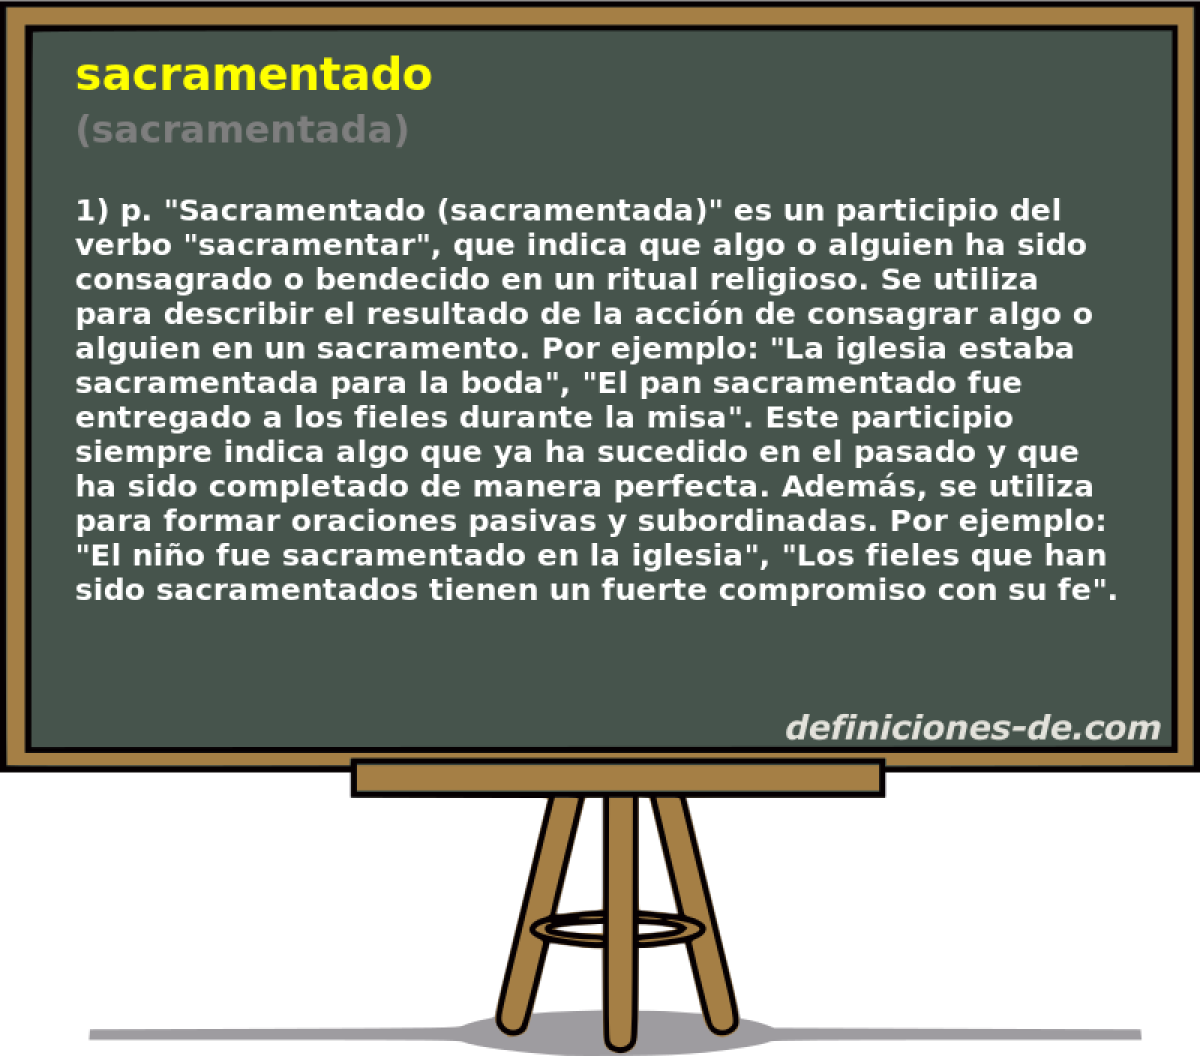 sacramentado (sacramentada)